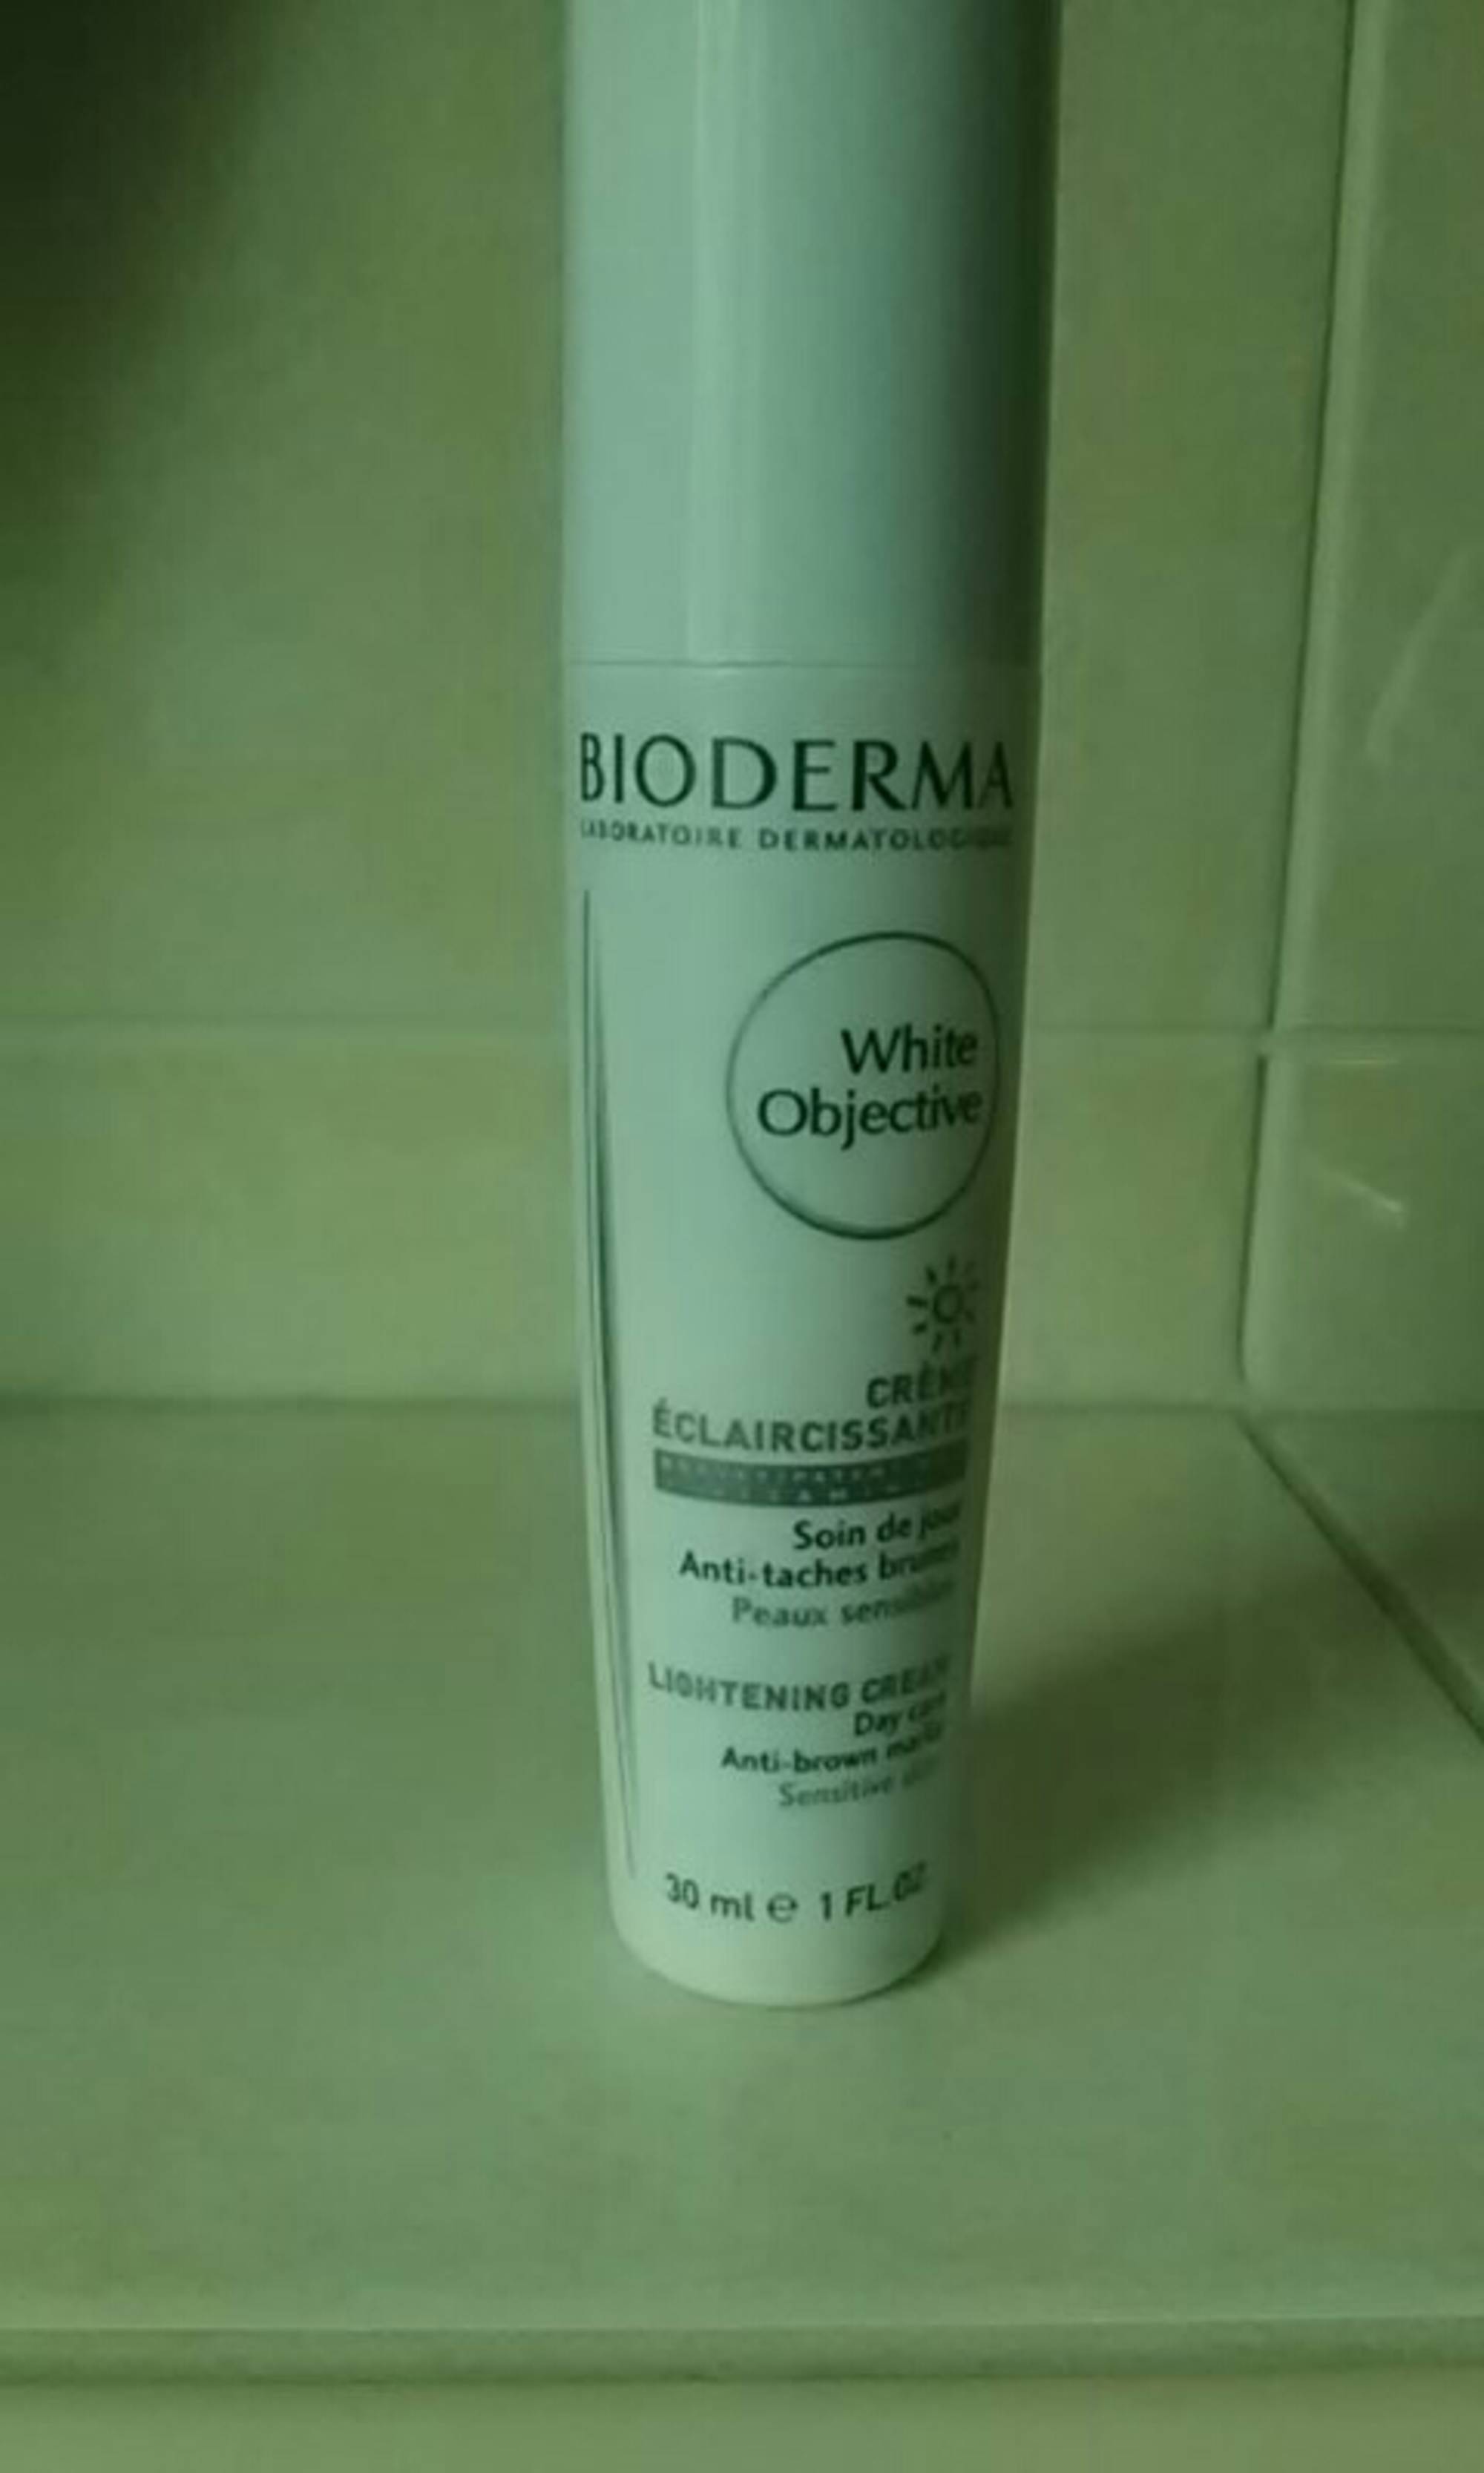 BIODERMA - White objective - Crème éclaircissante